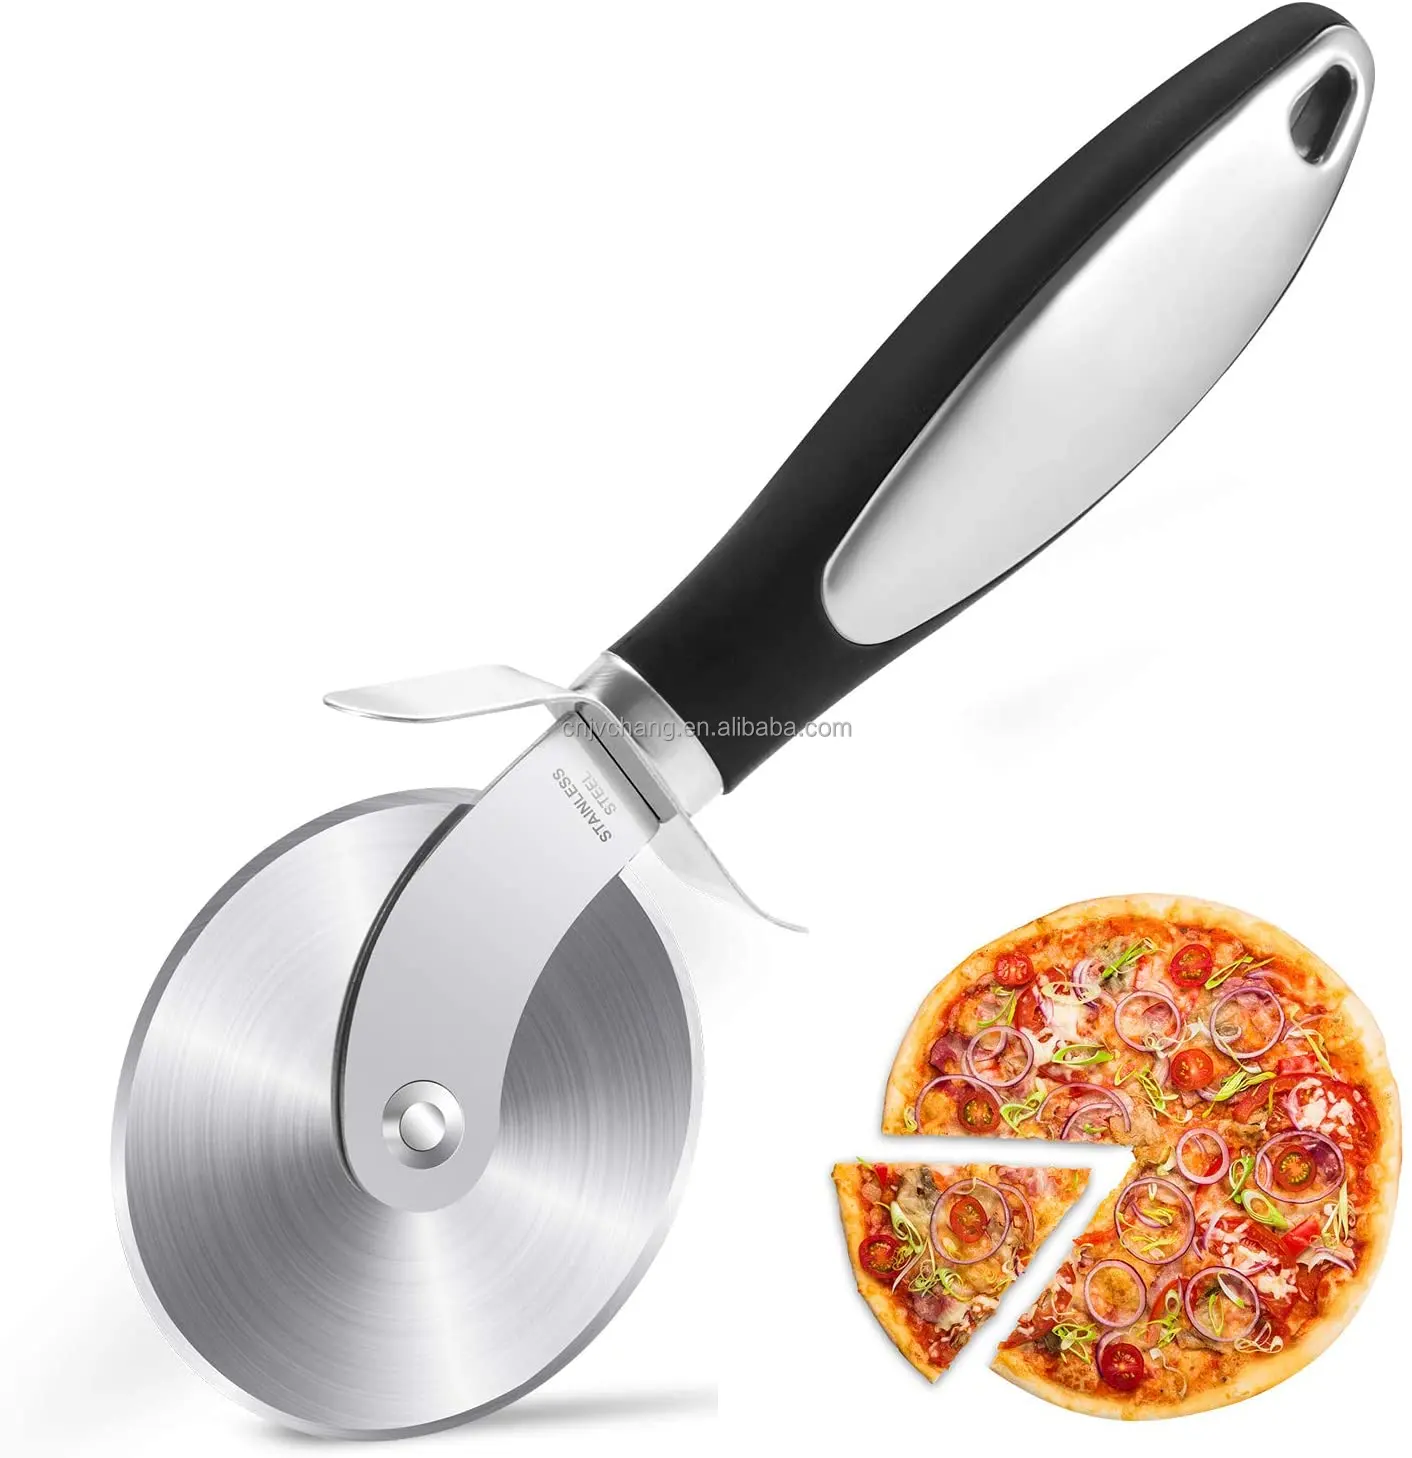 Hot Sale Pizza Tool Sichere Lagerung Scharfer Edelstahls ch neider Soft-Touch-Griff Pizza Cutter Wheel